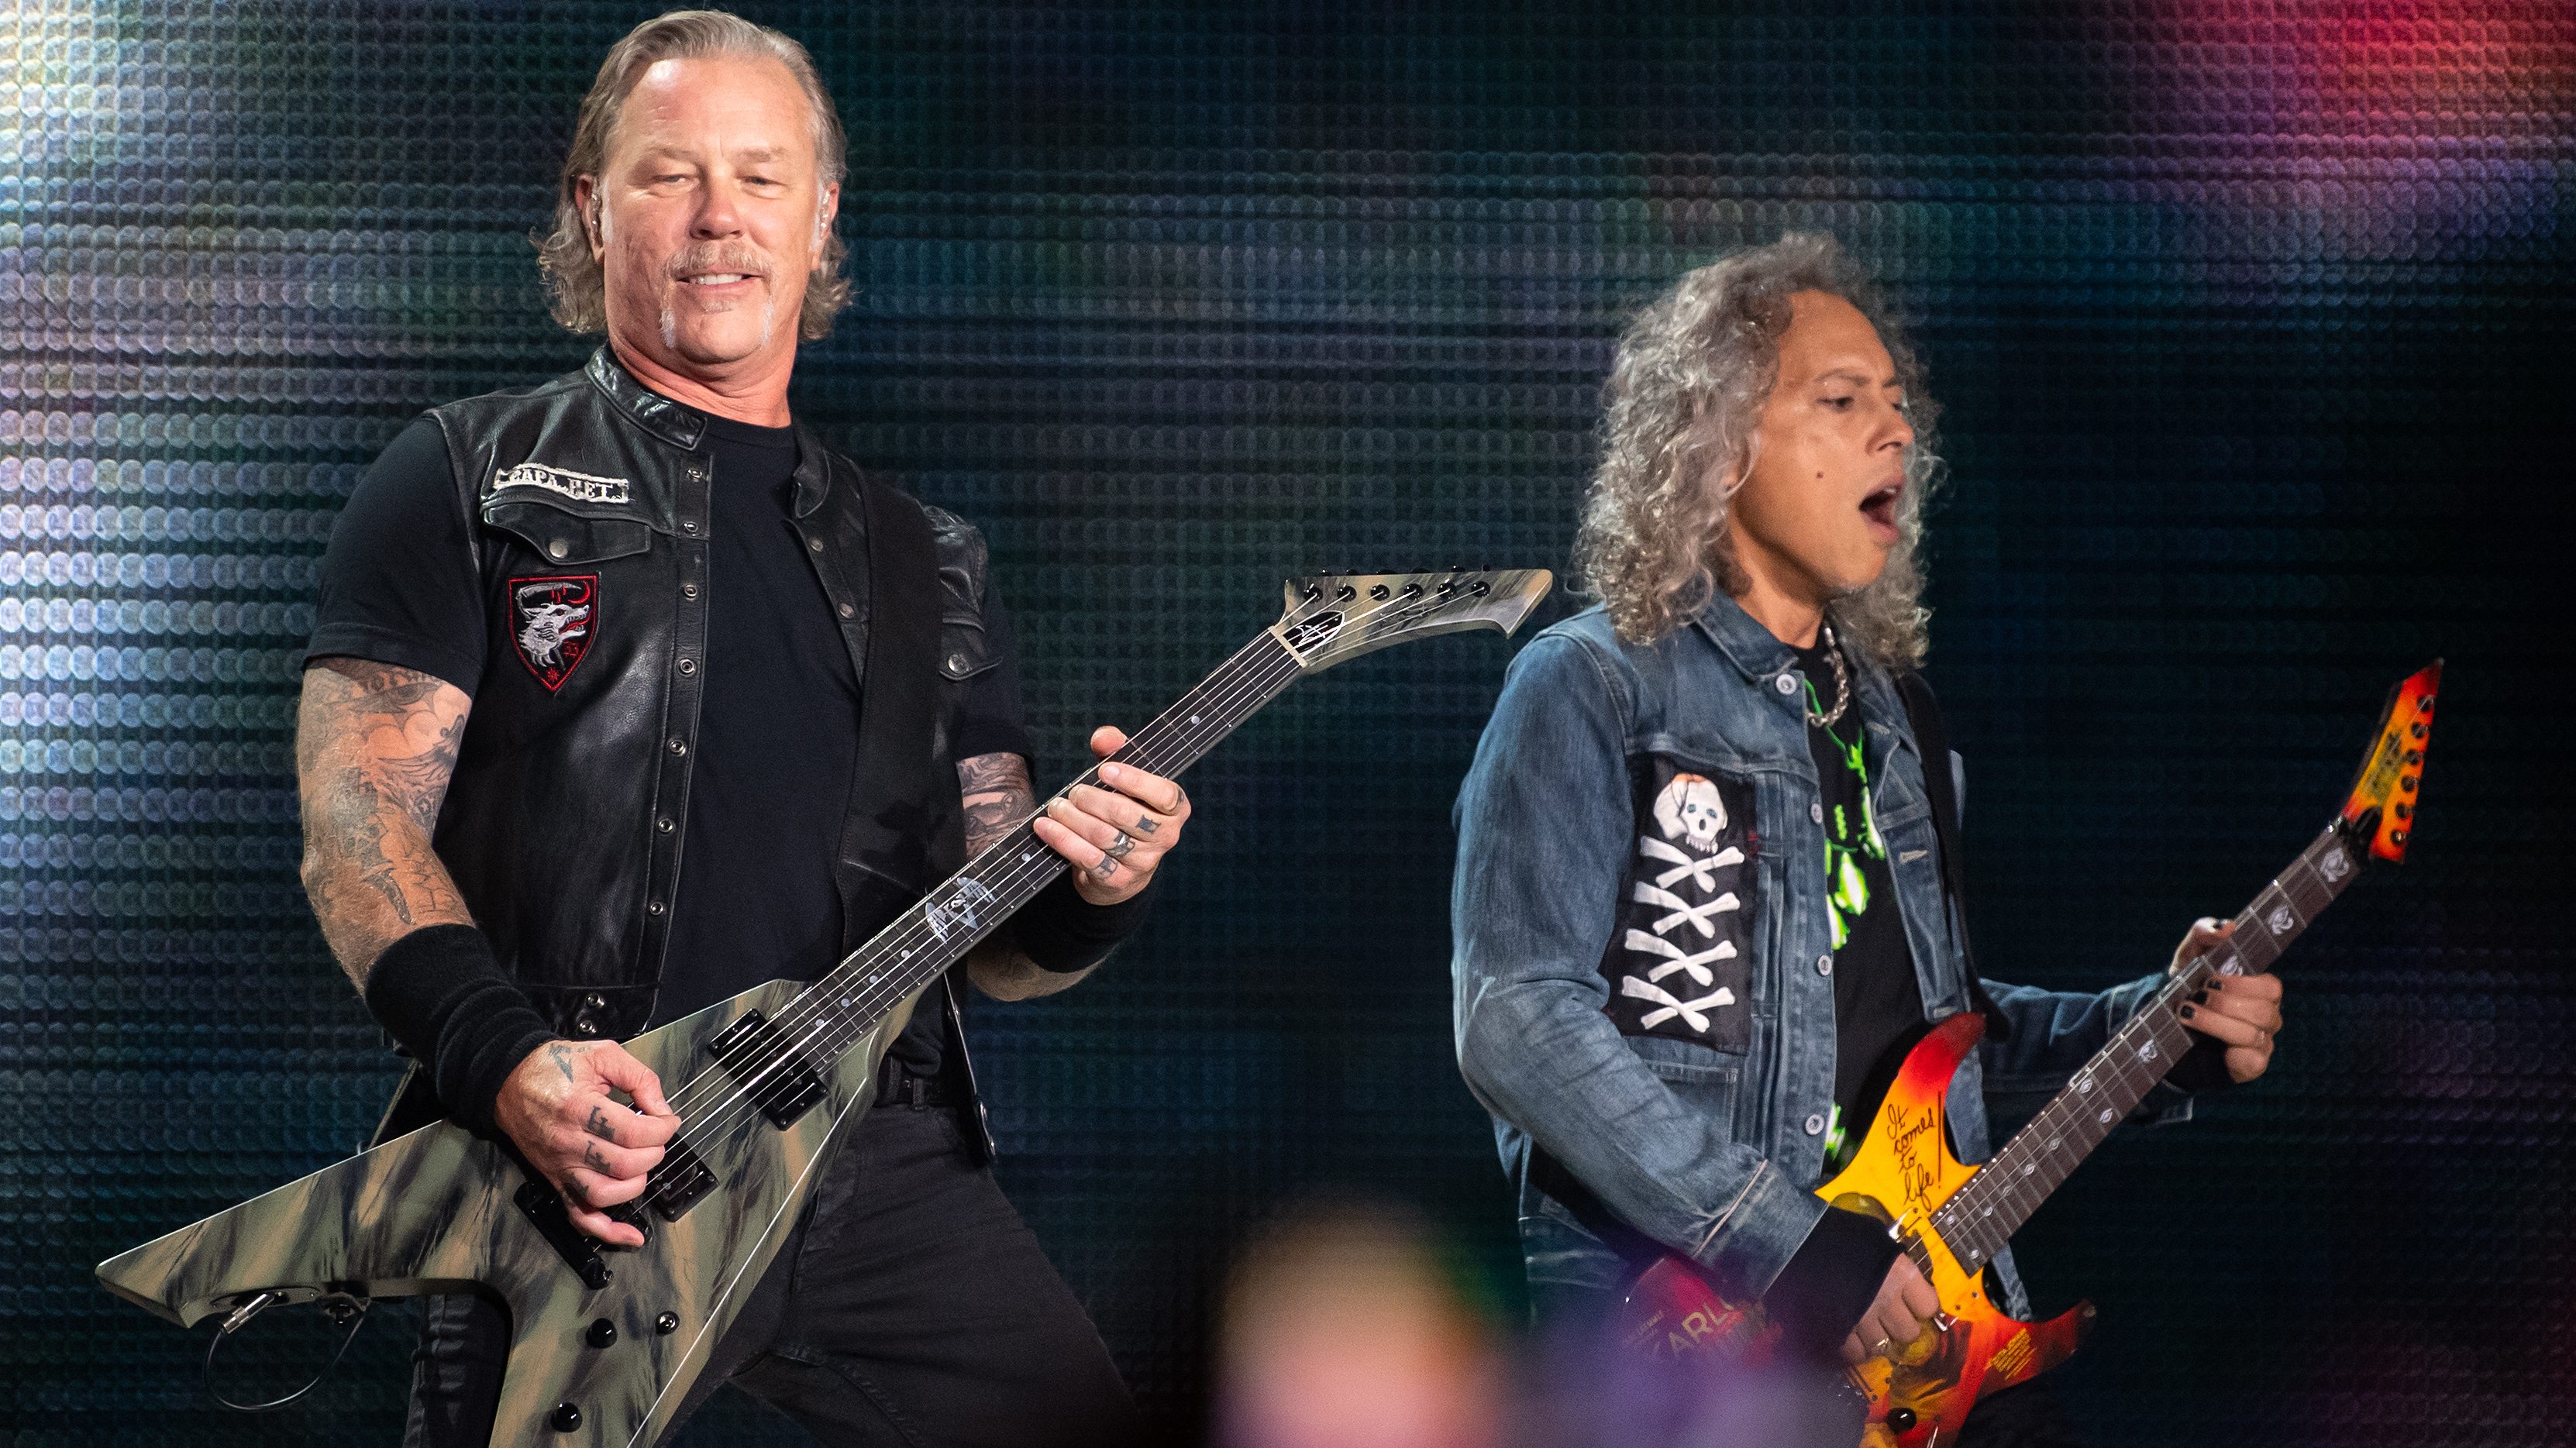 Concerto Metallica in Chile ya tendra lugar tras polémica por cancelacion del show en el Estadio Nacional